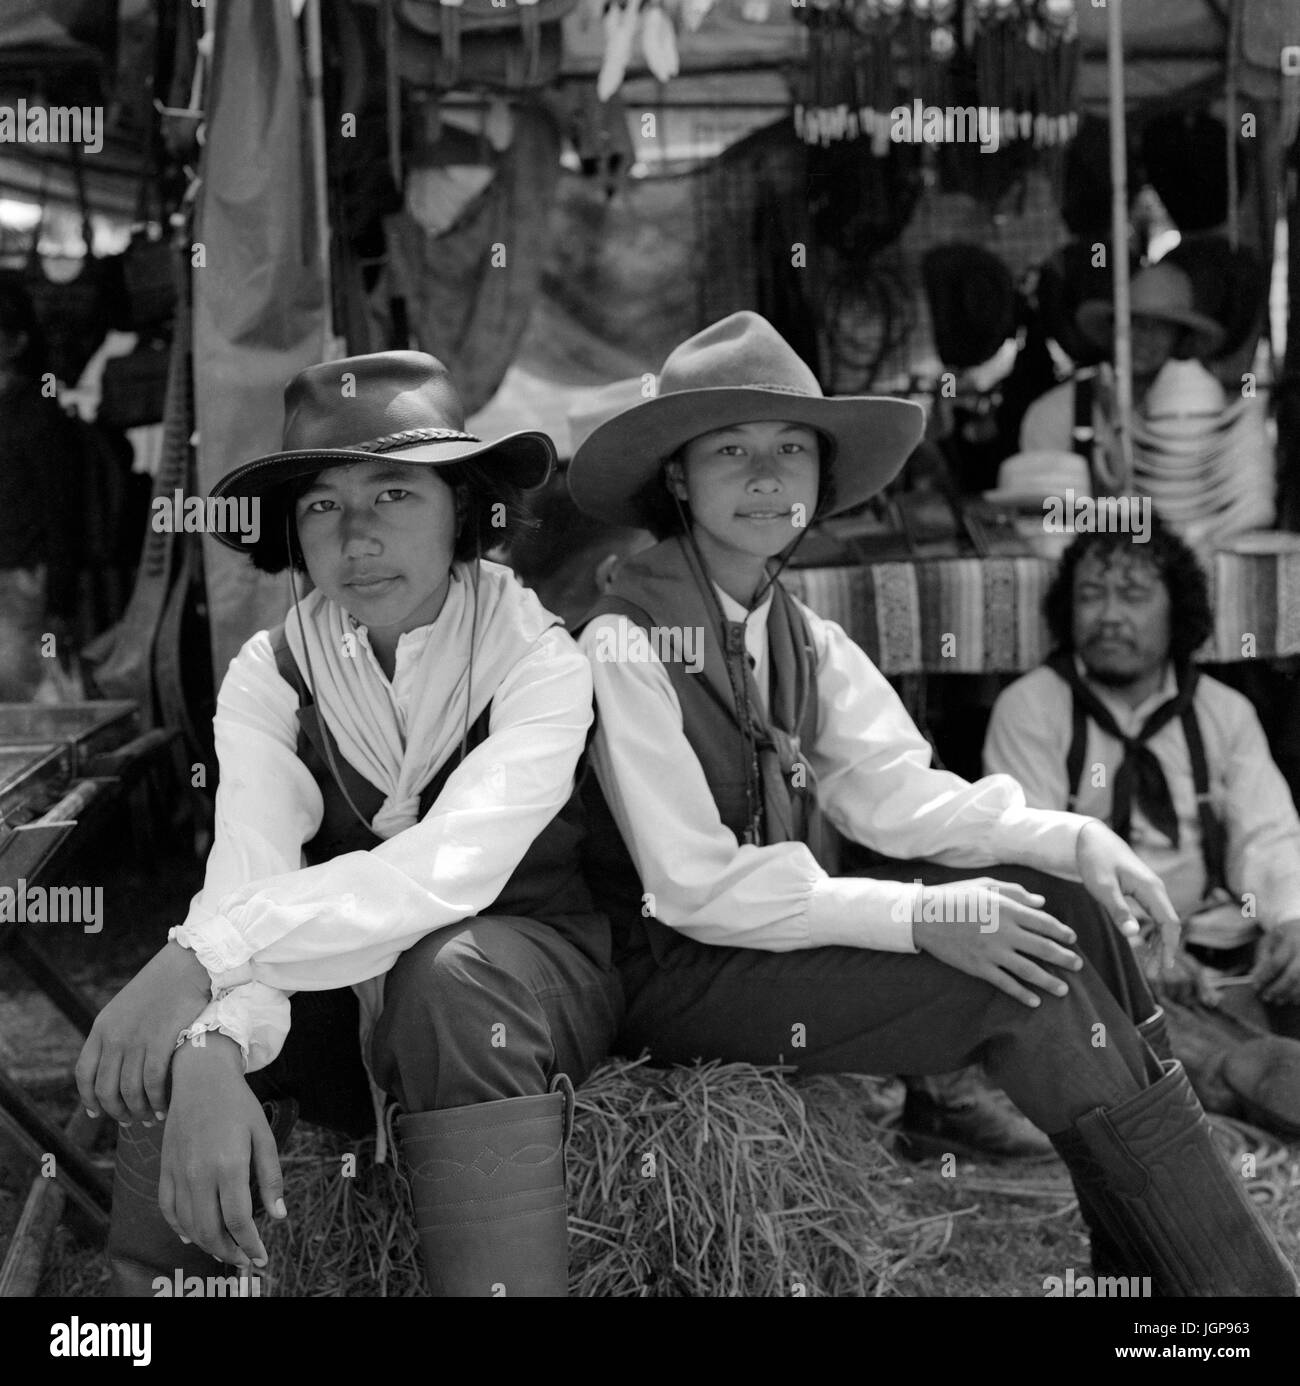 Portrait en noir et blanc de deux jeunes filles thaïlandaises vêtues de cow-girls occidentales lors d'un rassemblement de motards. Asie du Sud-est. Photographie en noir et blanc Banque D'Images